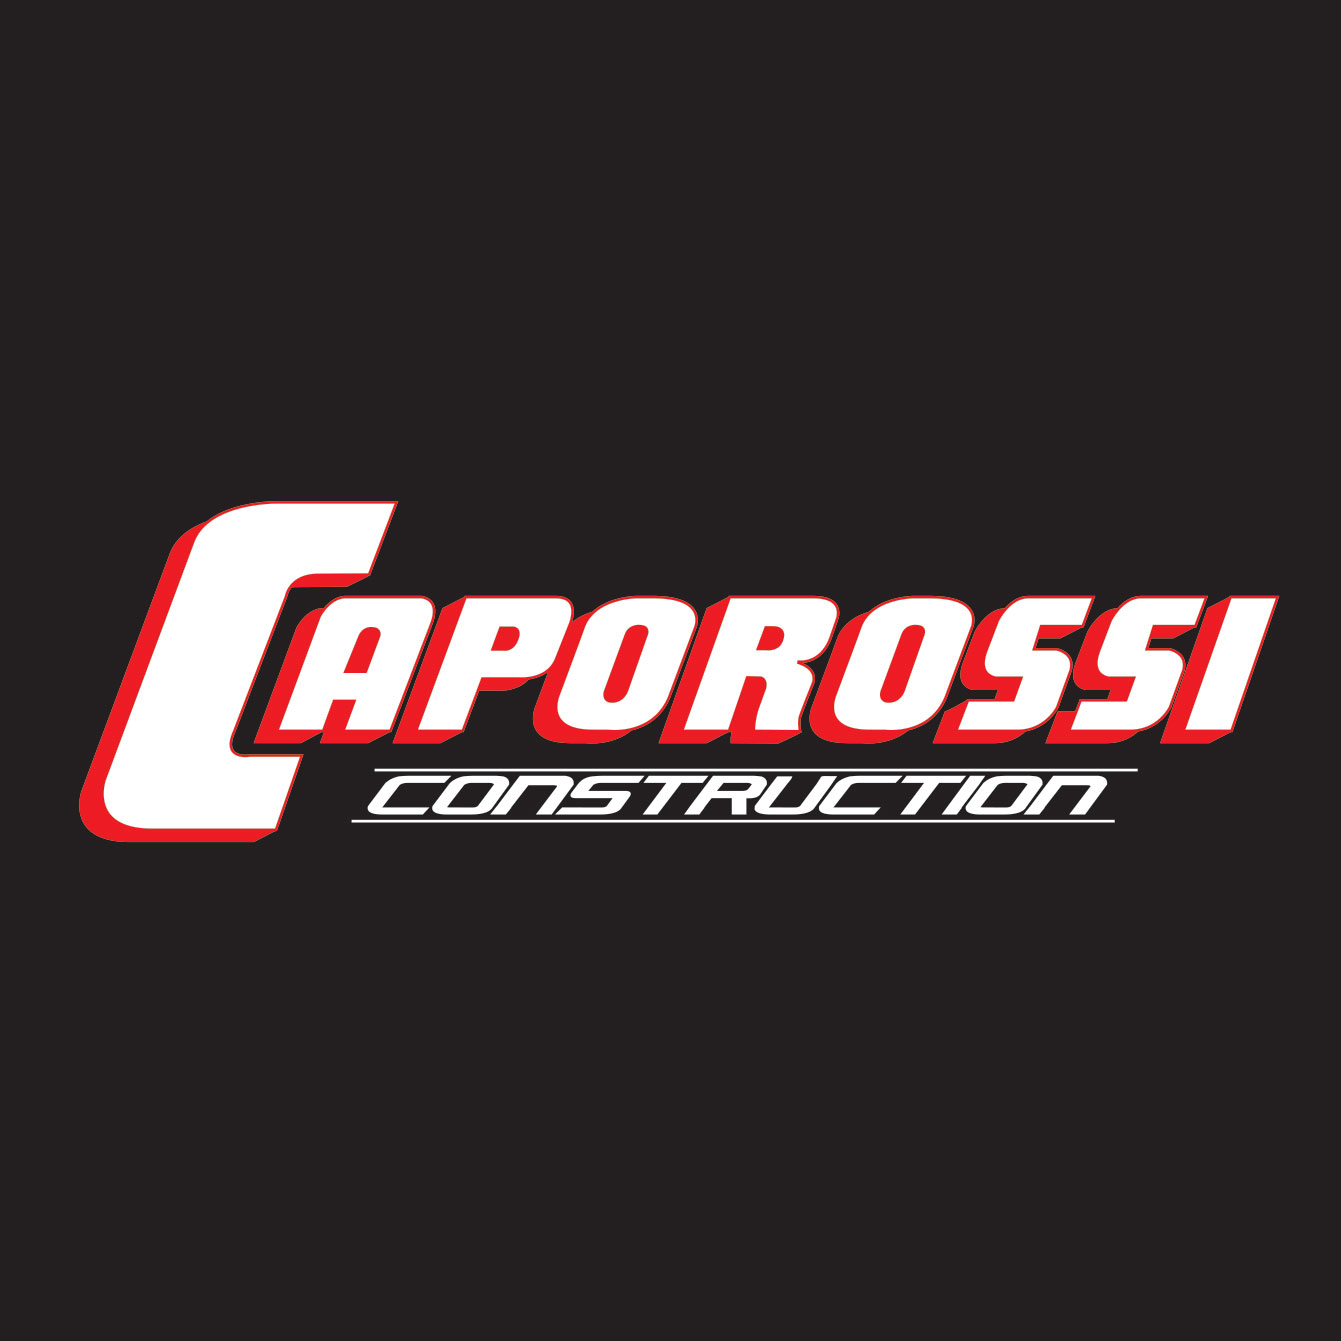 Caporossi Construction